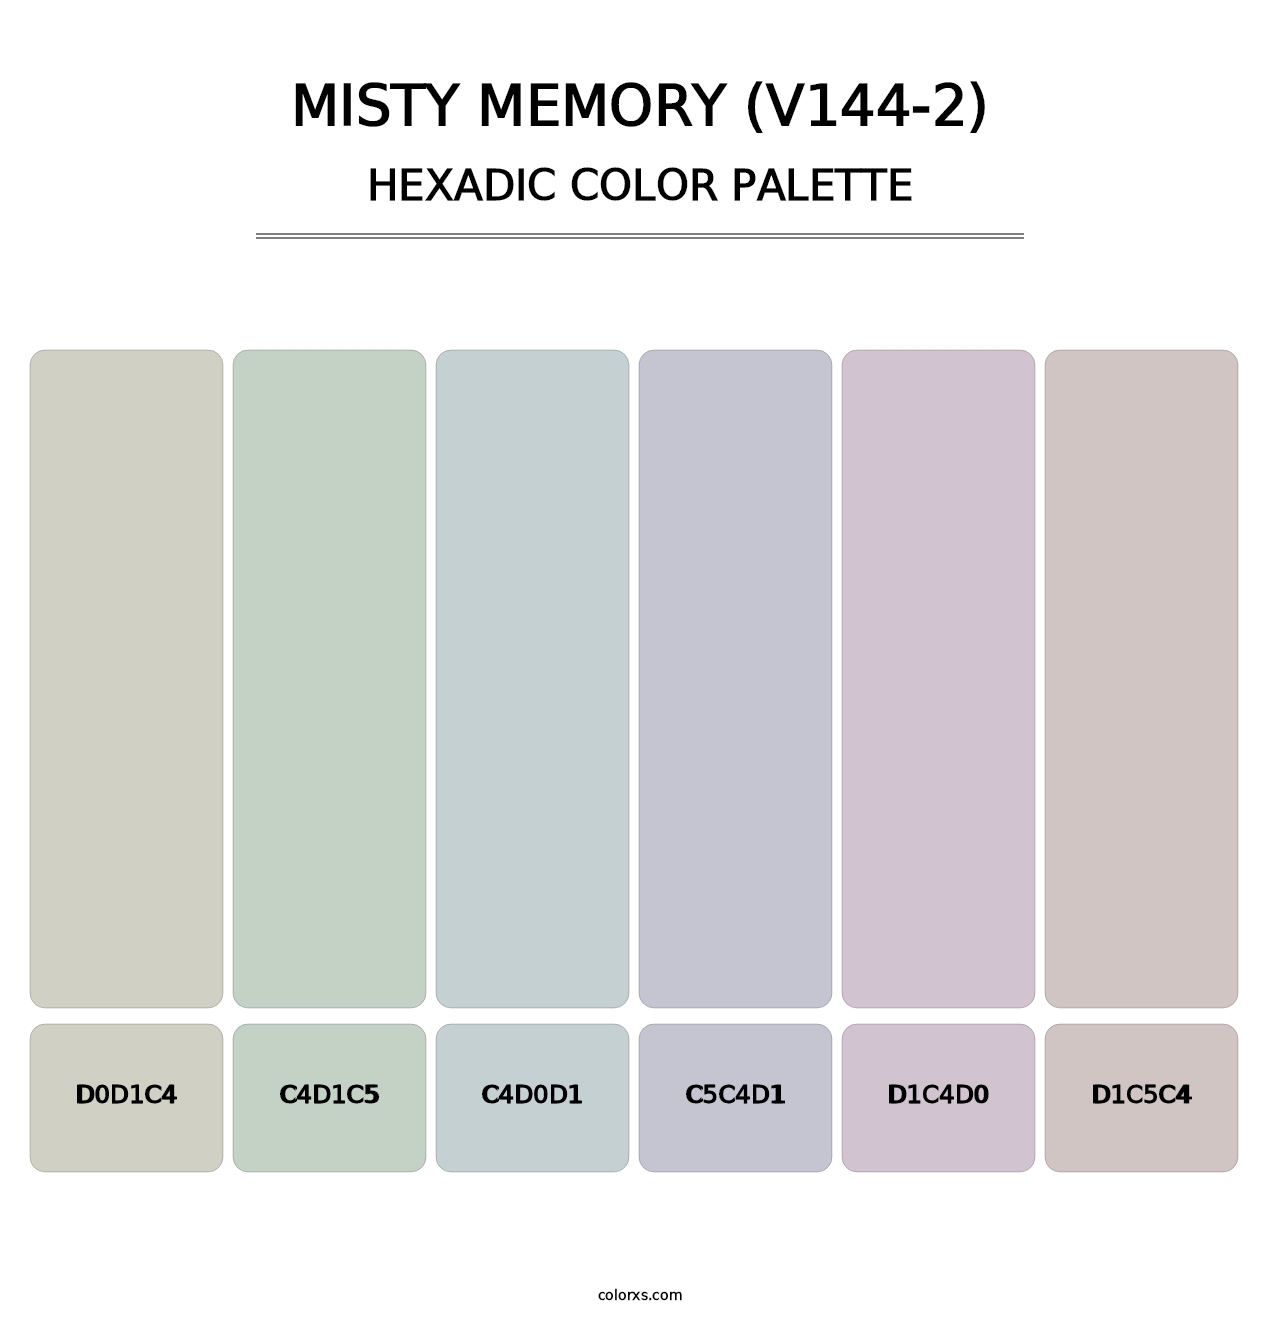 Misty Memory (V144-2) - Hexadic Color Palette